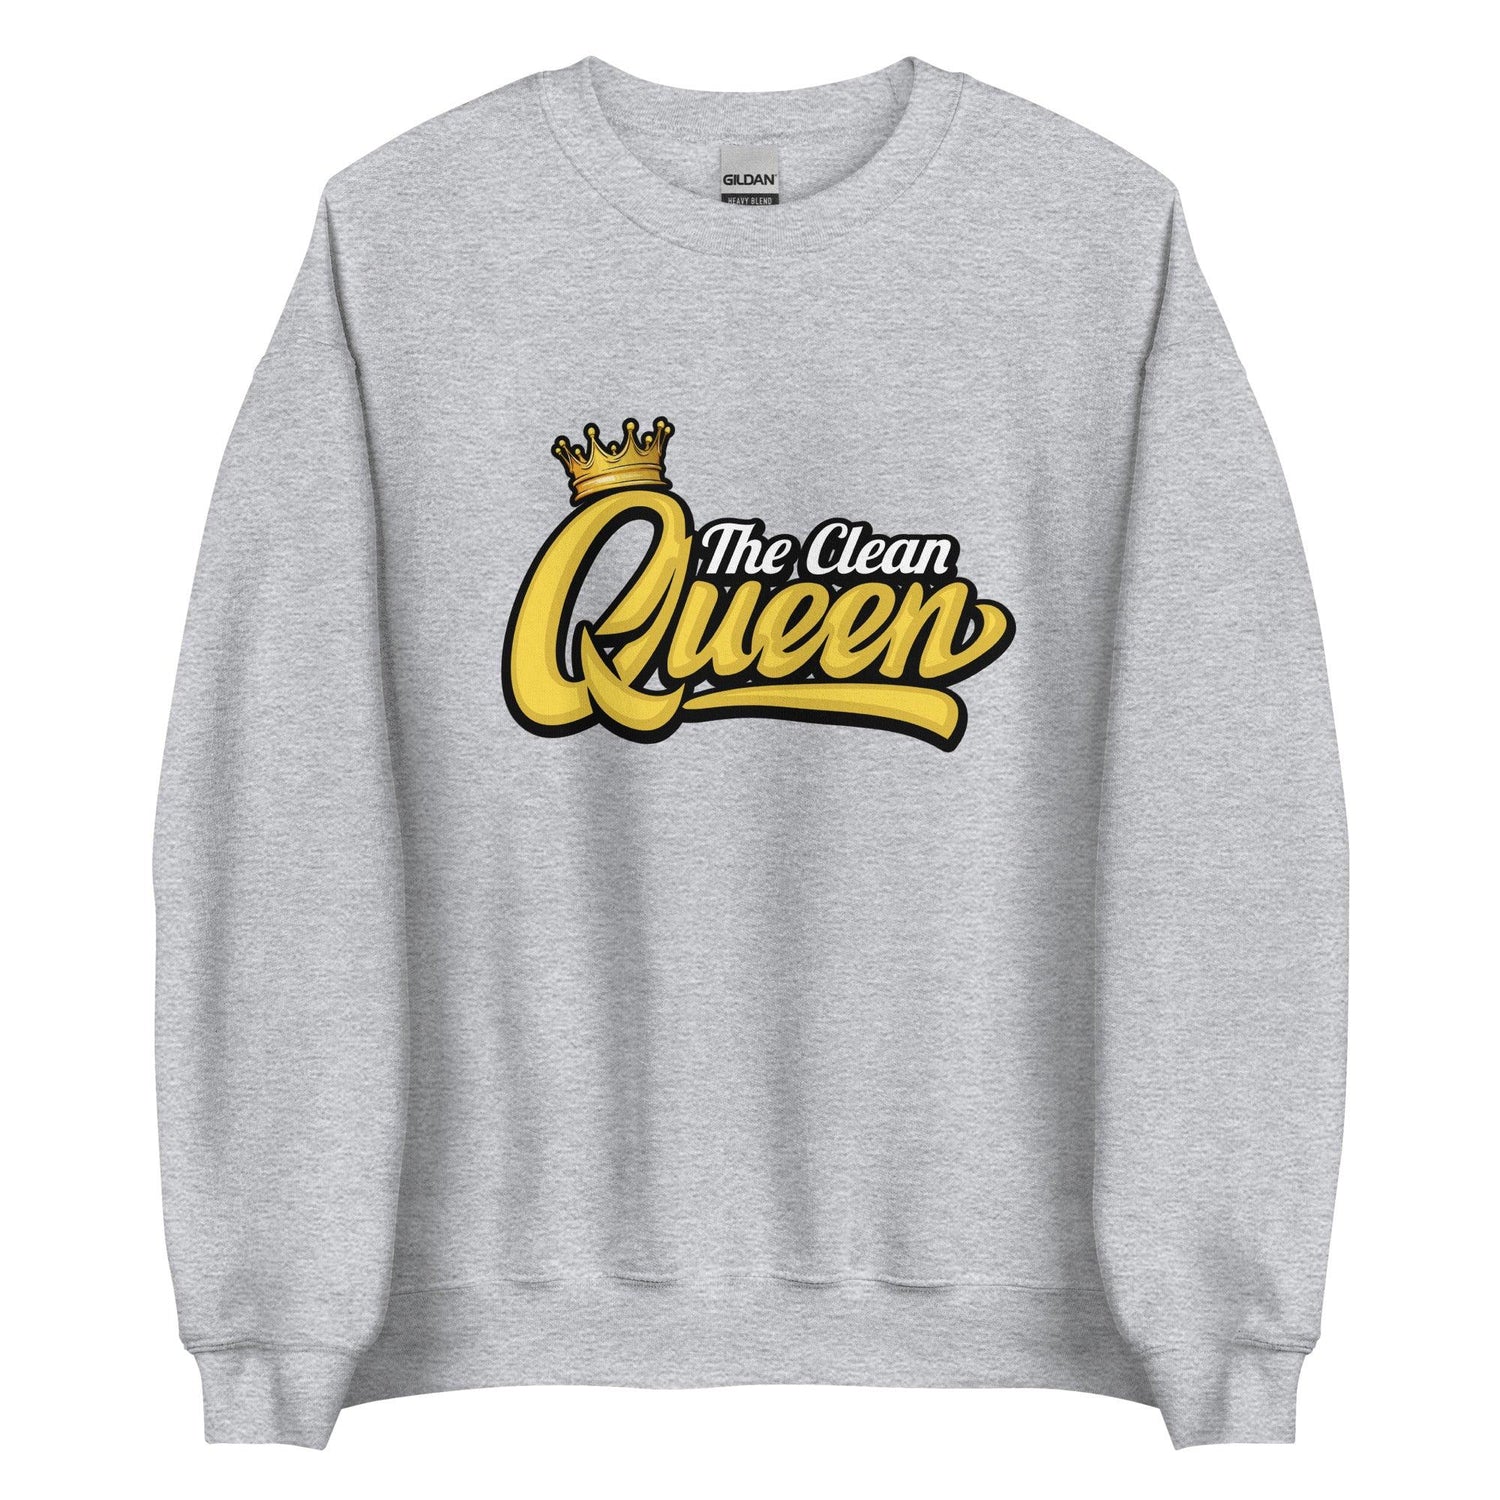 Hannah Cunliffe "Clean Queen" Sweatshirt - Fan Arch